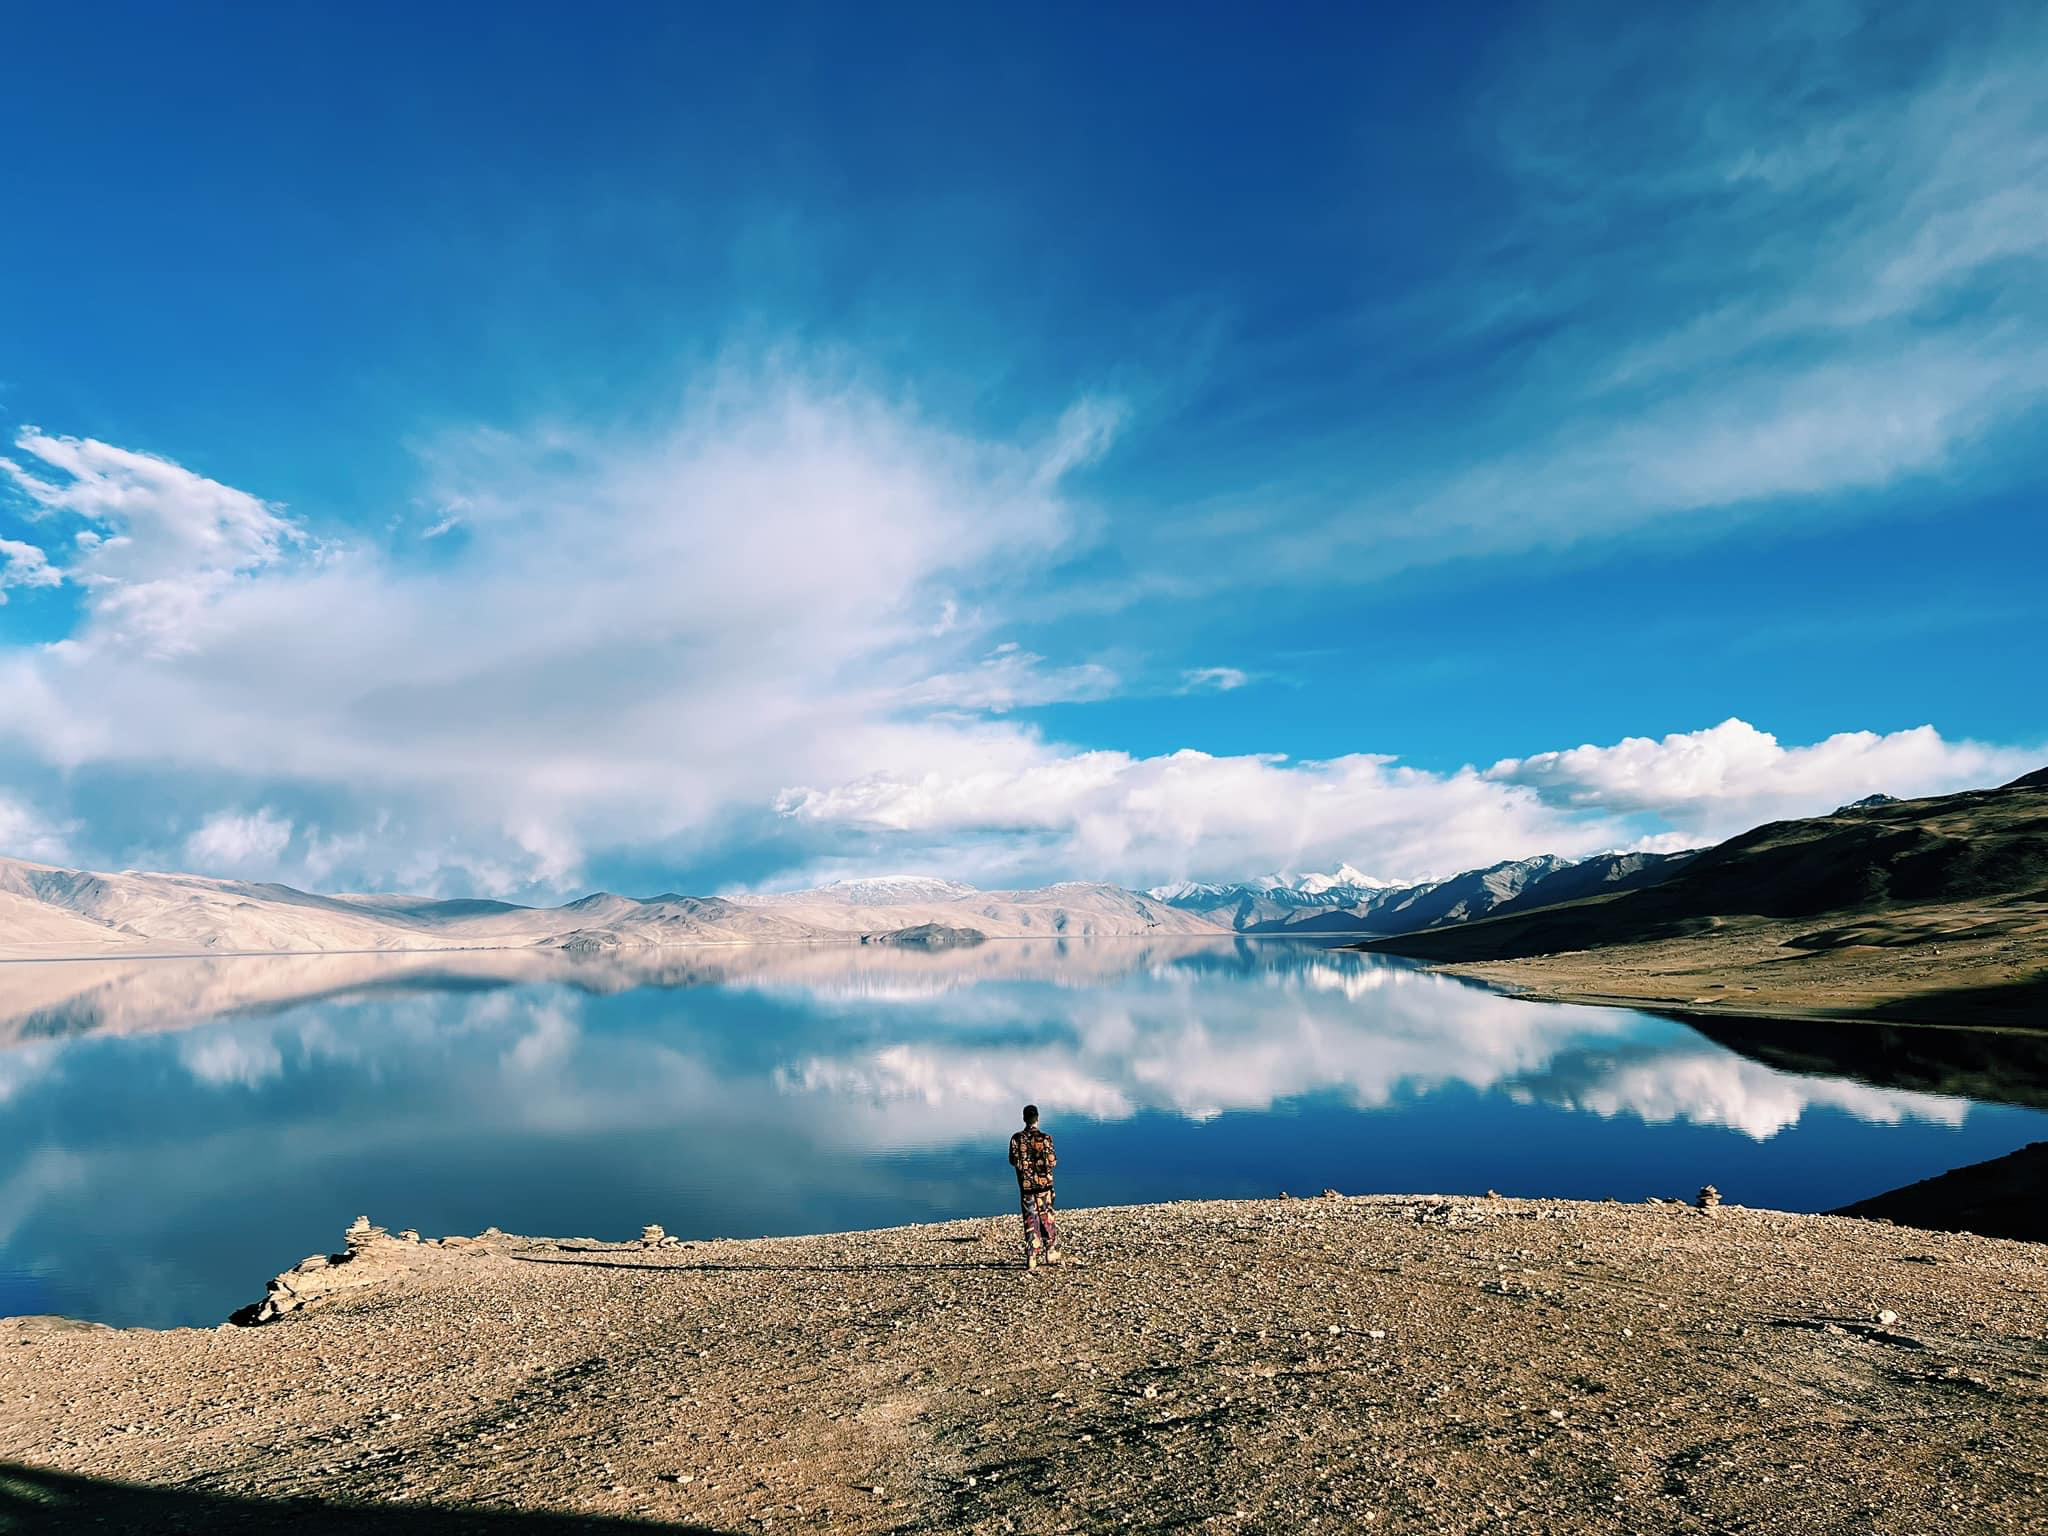 Hồ Pangong Tso nằm gọn trong dãy Himalaya có khả năng thay đổi màu sắc theo thời tiết, theo mùa và thậm chí là theo những thời điểm khác nhau trong ngày. Trước khung cảnh hùng vỹ này, con người trở nên nhỏ bé và mọi vướng bận cuộc sống hiện đại đề phải lùi xa để nhường chỗ cho tĩnh lặng bình yên.